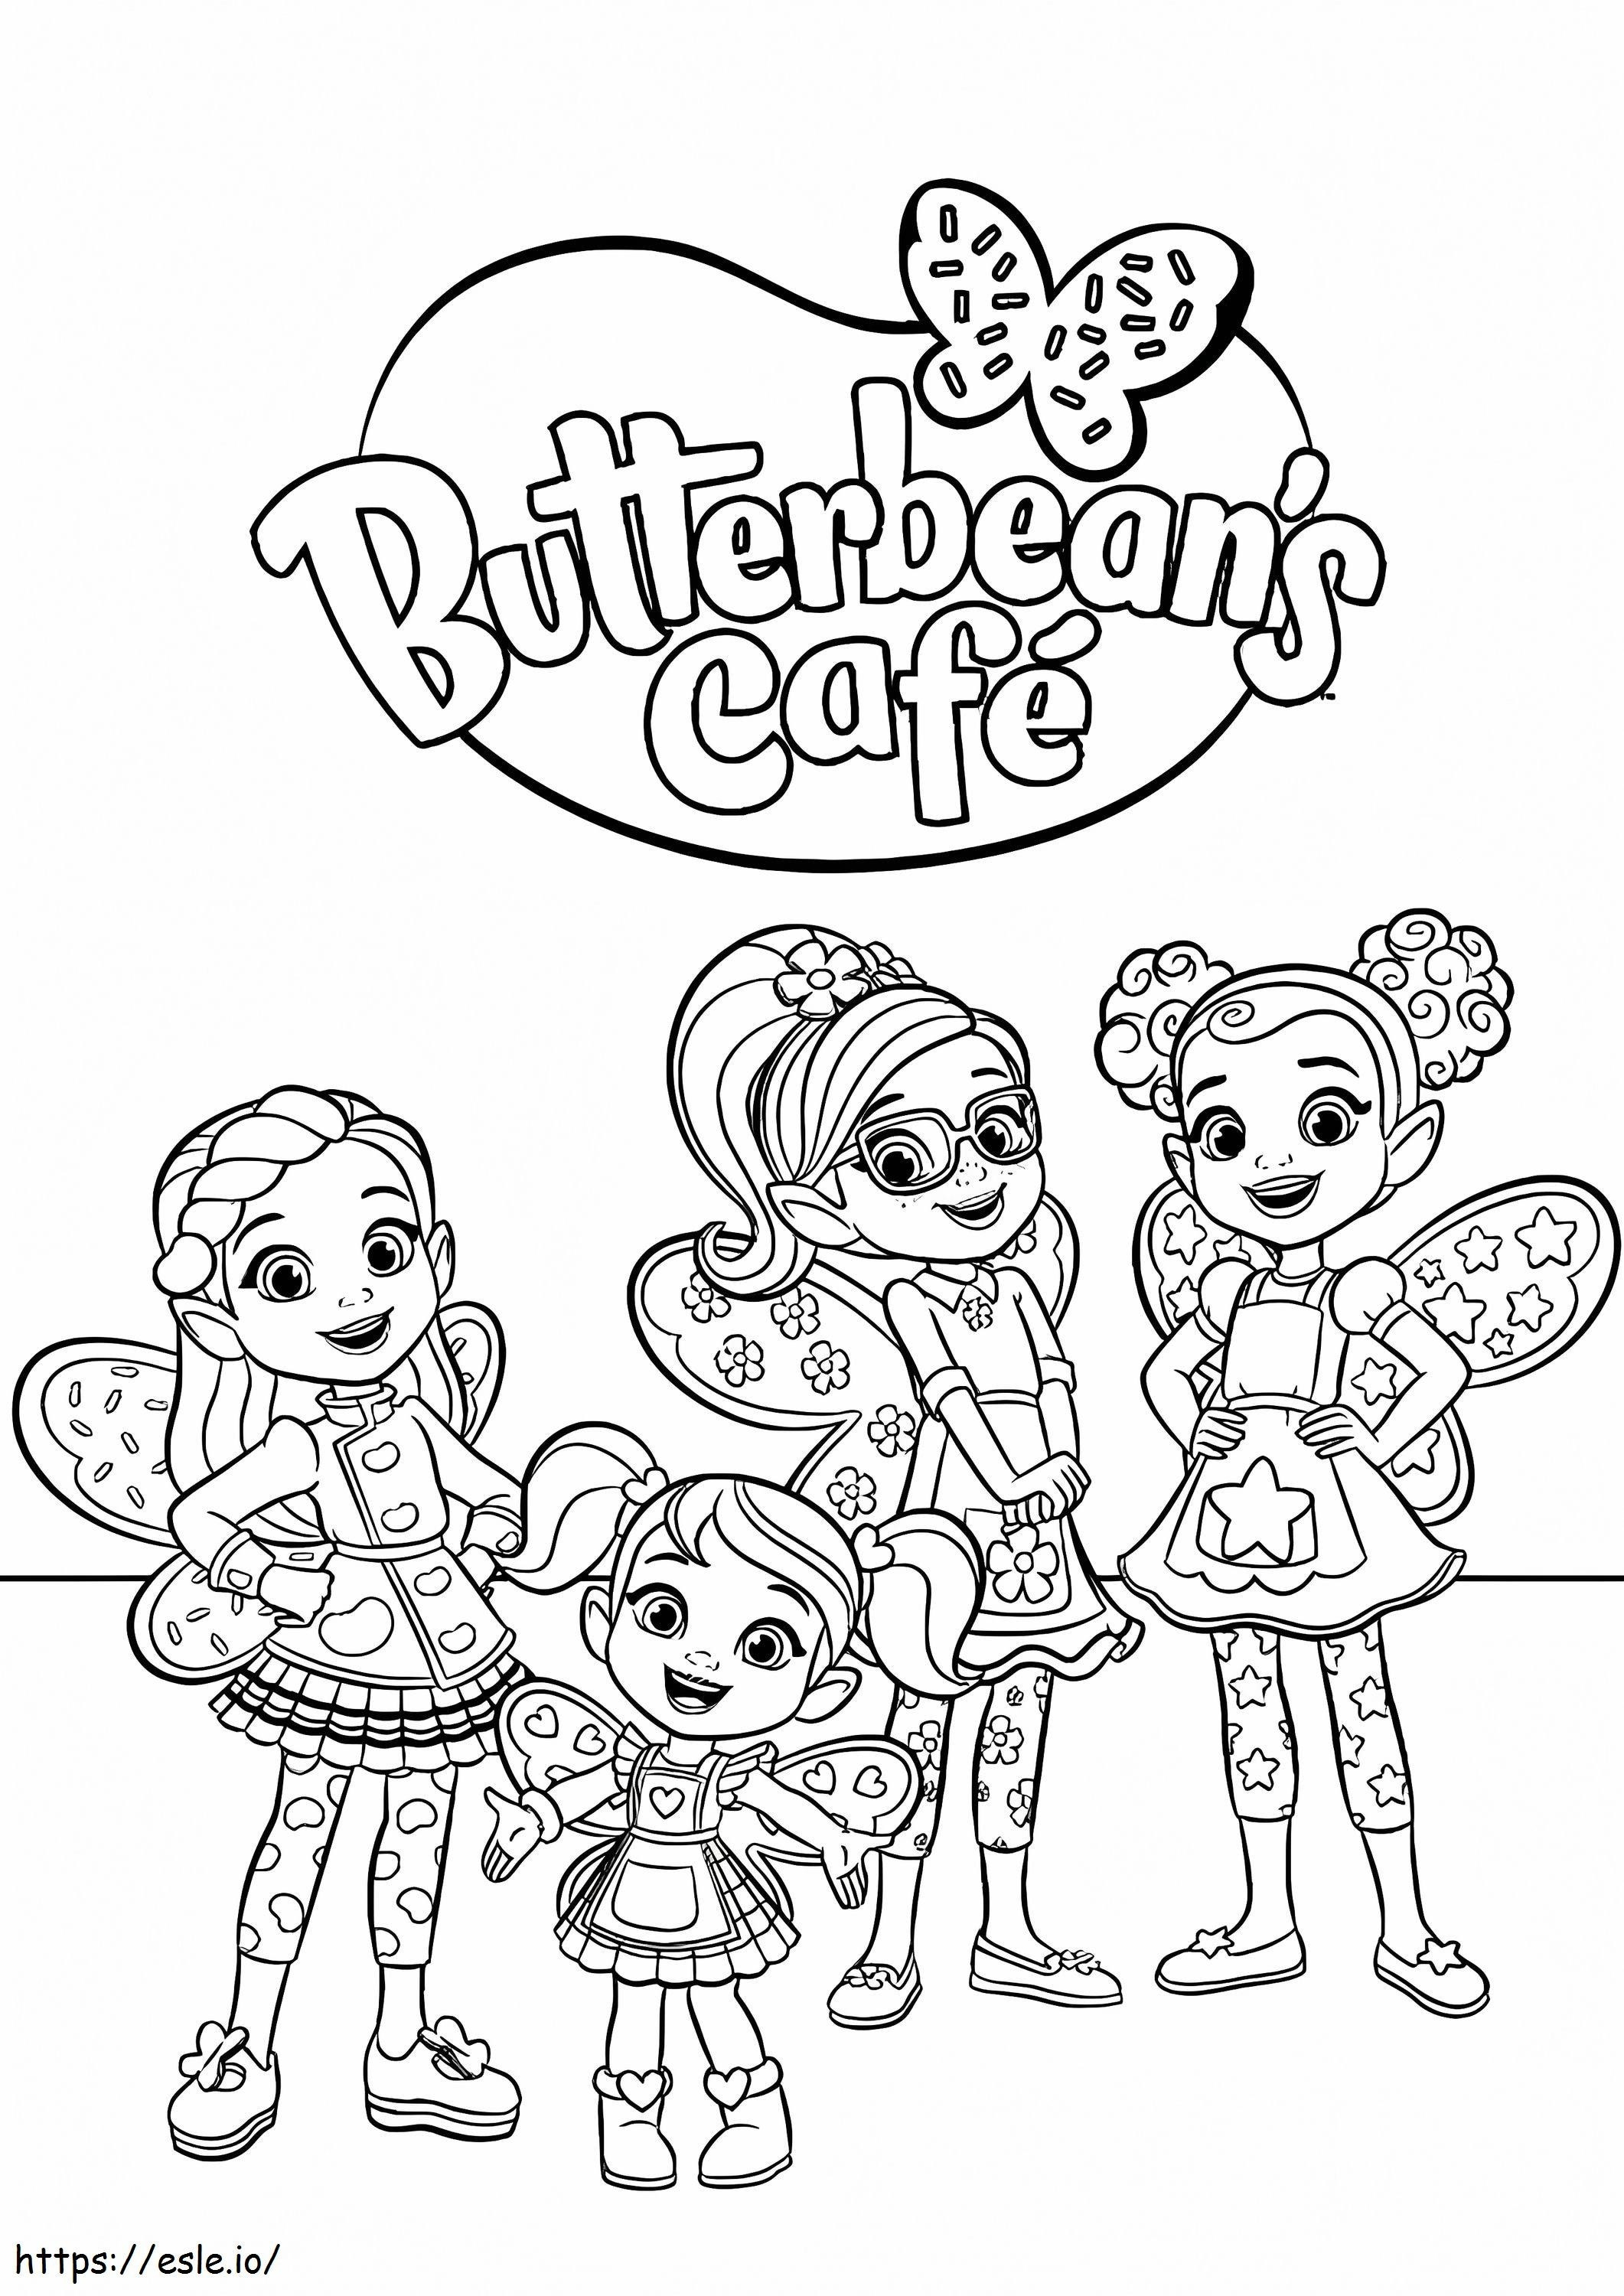 Coloriage Personnages du Butterbeans Cafe à imprimer dessin